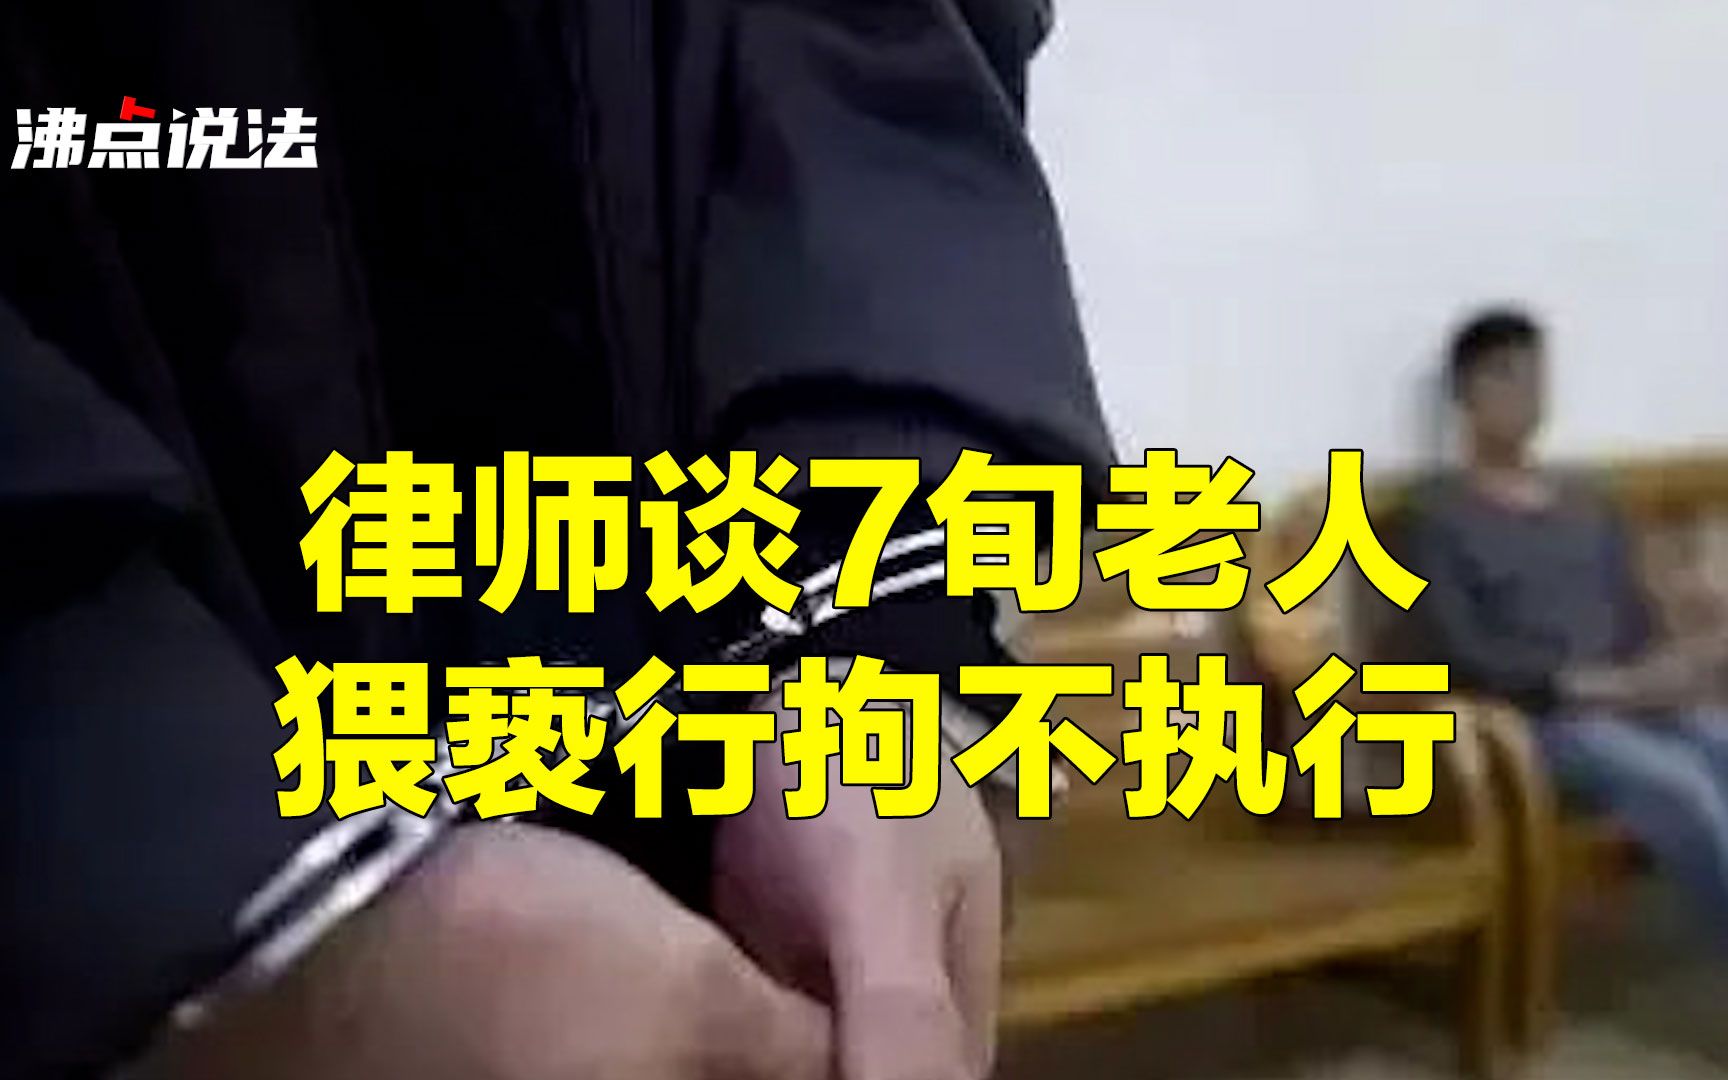 湖南一12岁幼女称被三老师强奸 生下孩子当证据_社会_环球网